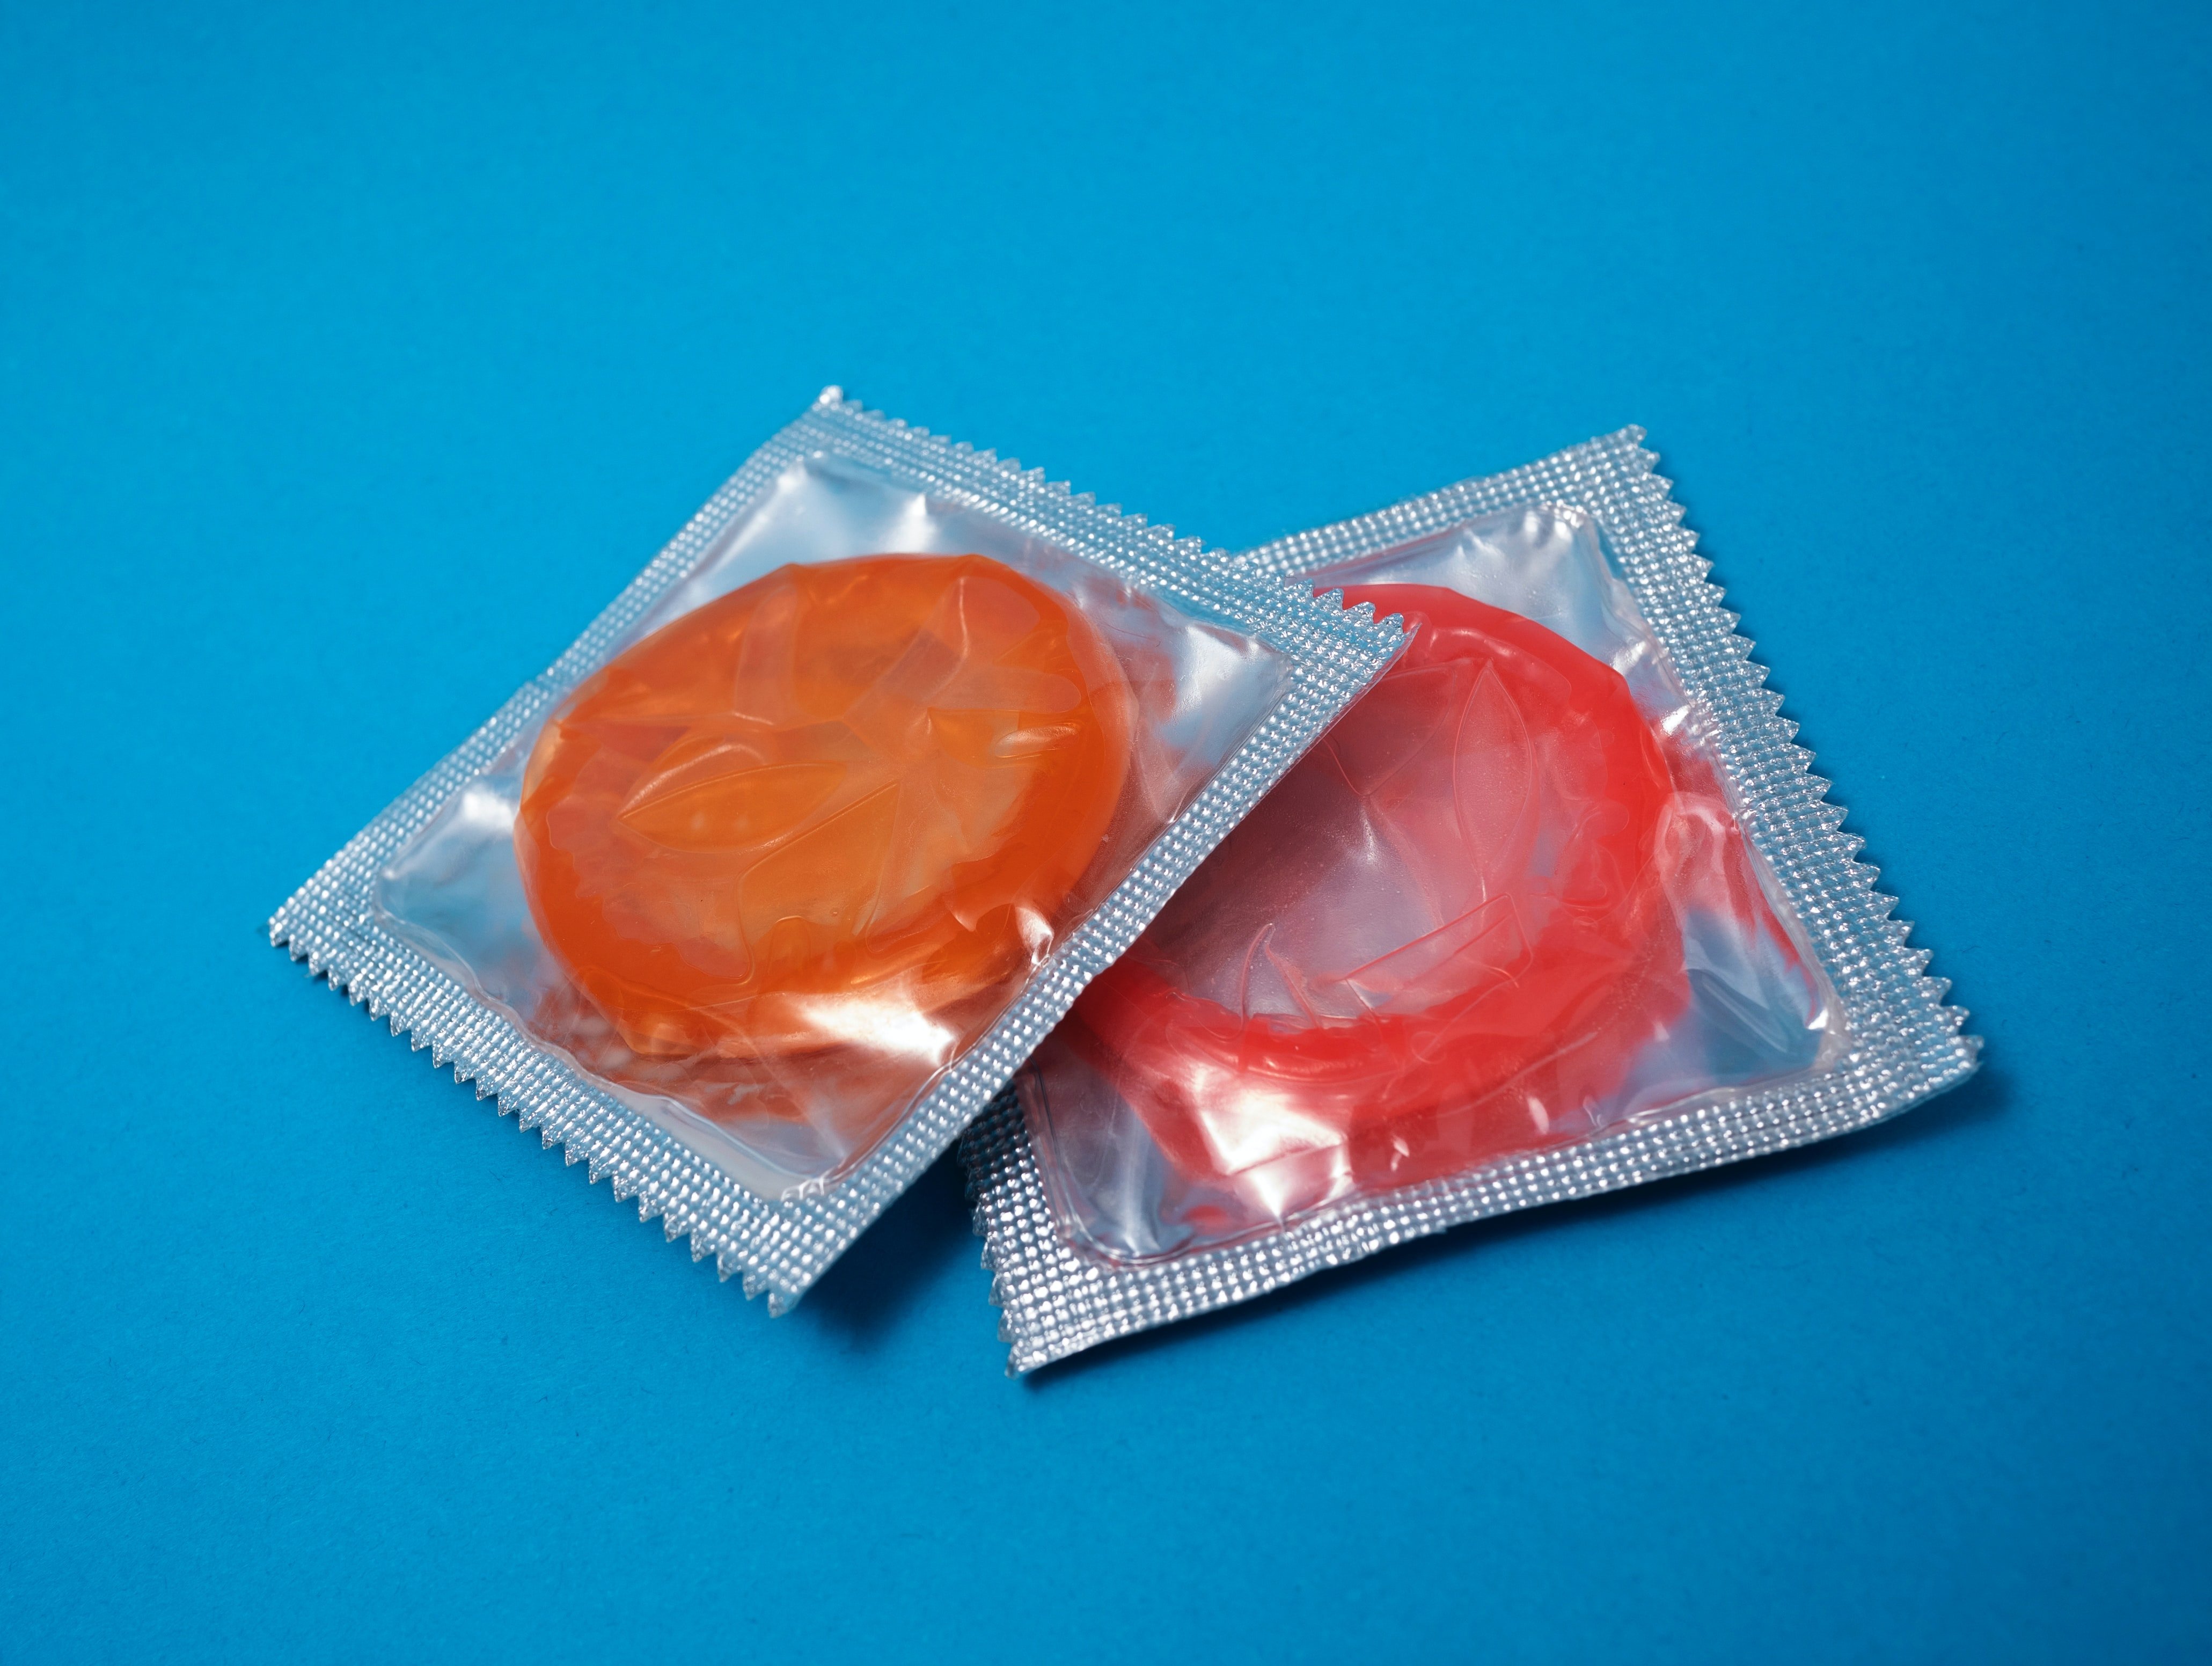 California ya prohíbe el stealthing, la acción de sacarse el condón sin permiso